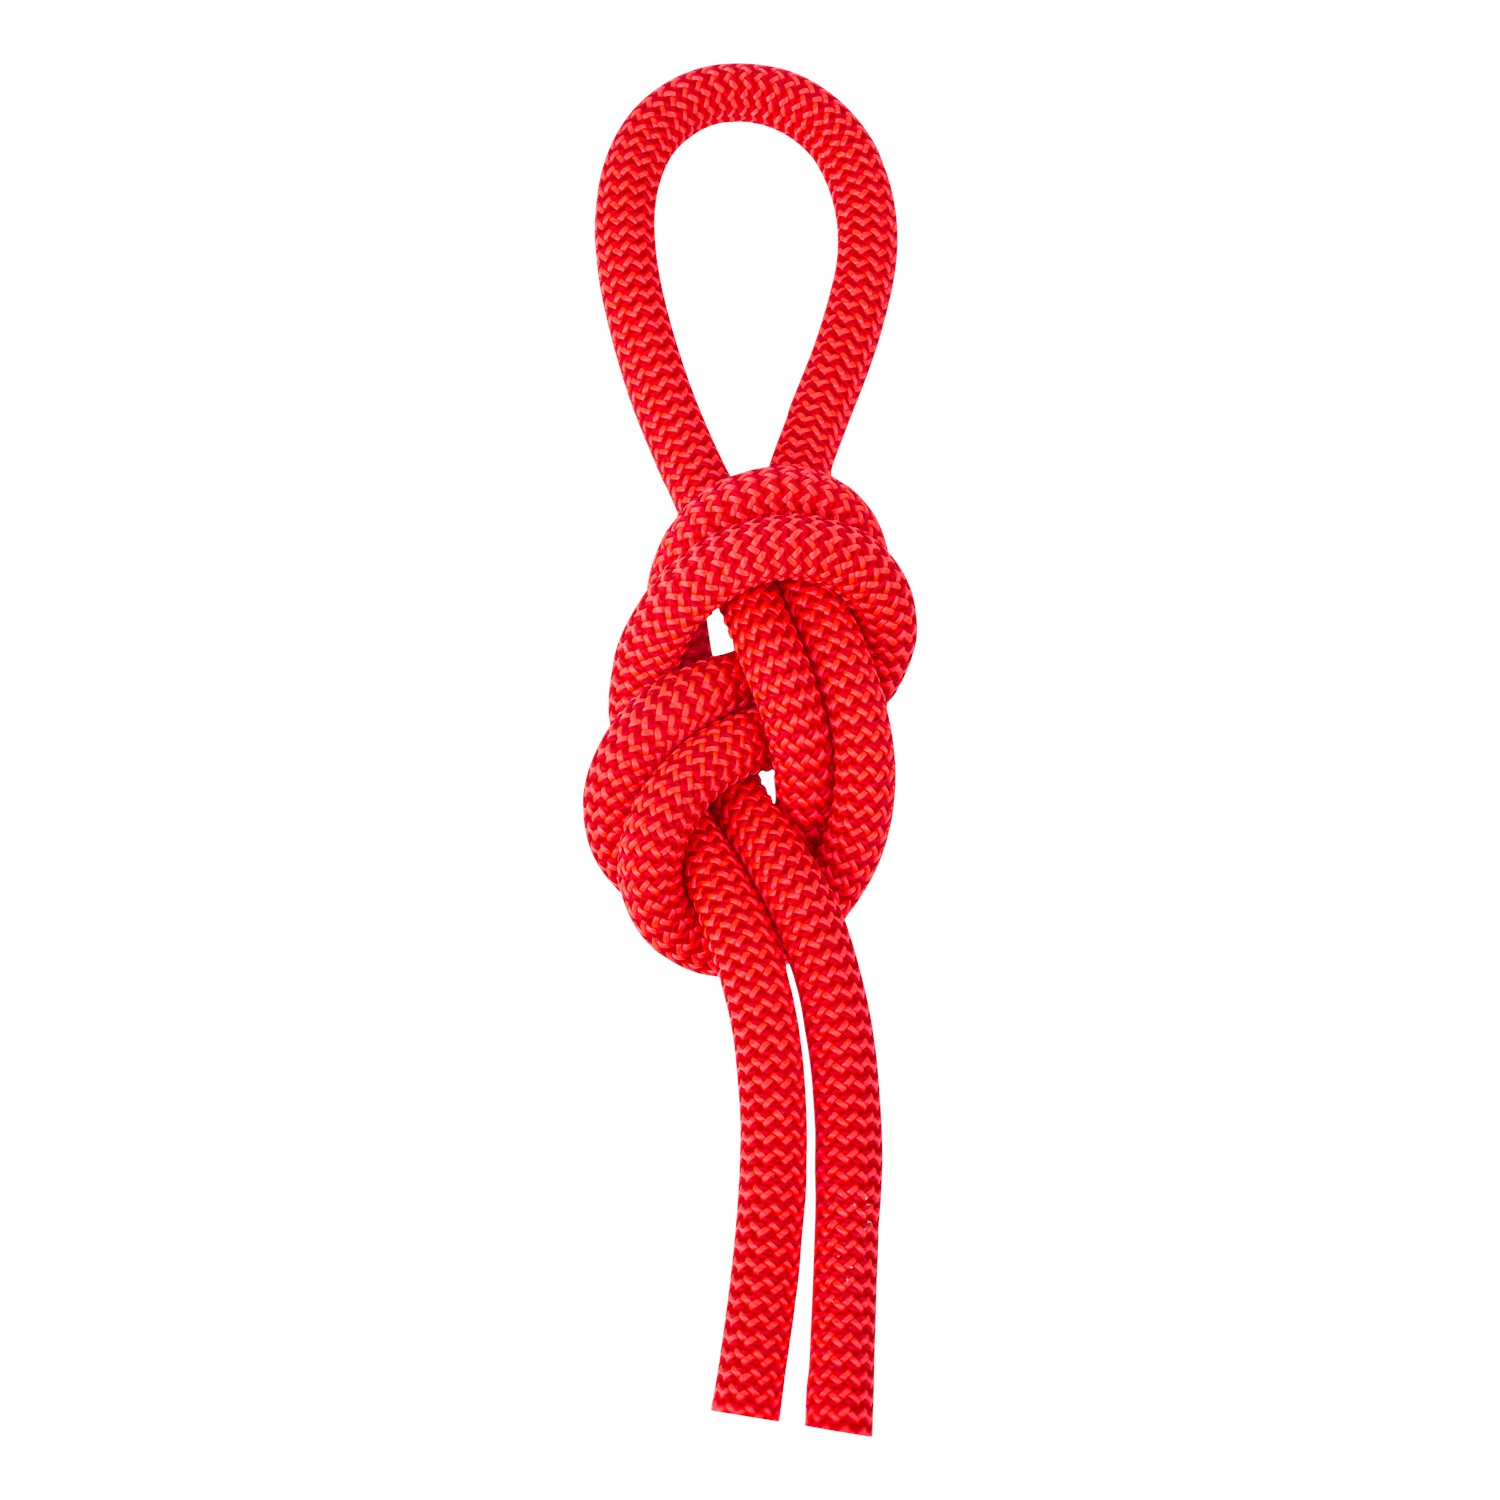 Matassa di corda rossa Corde color rosso